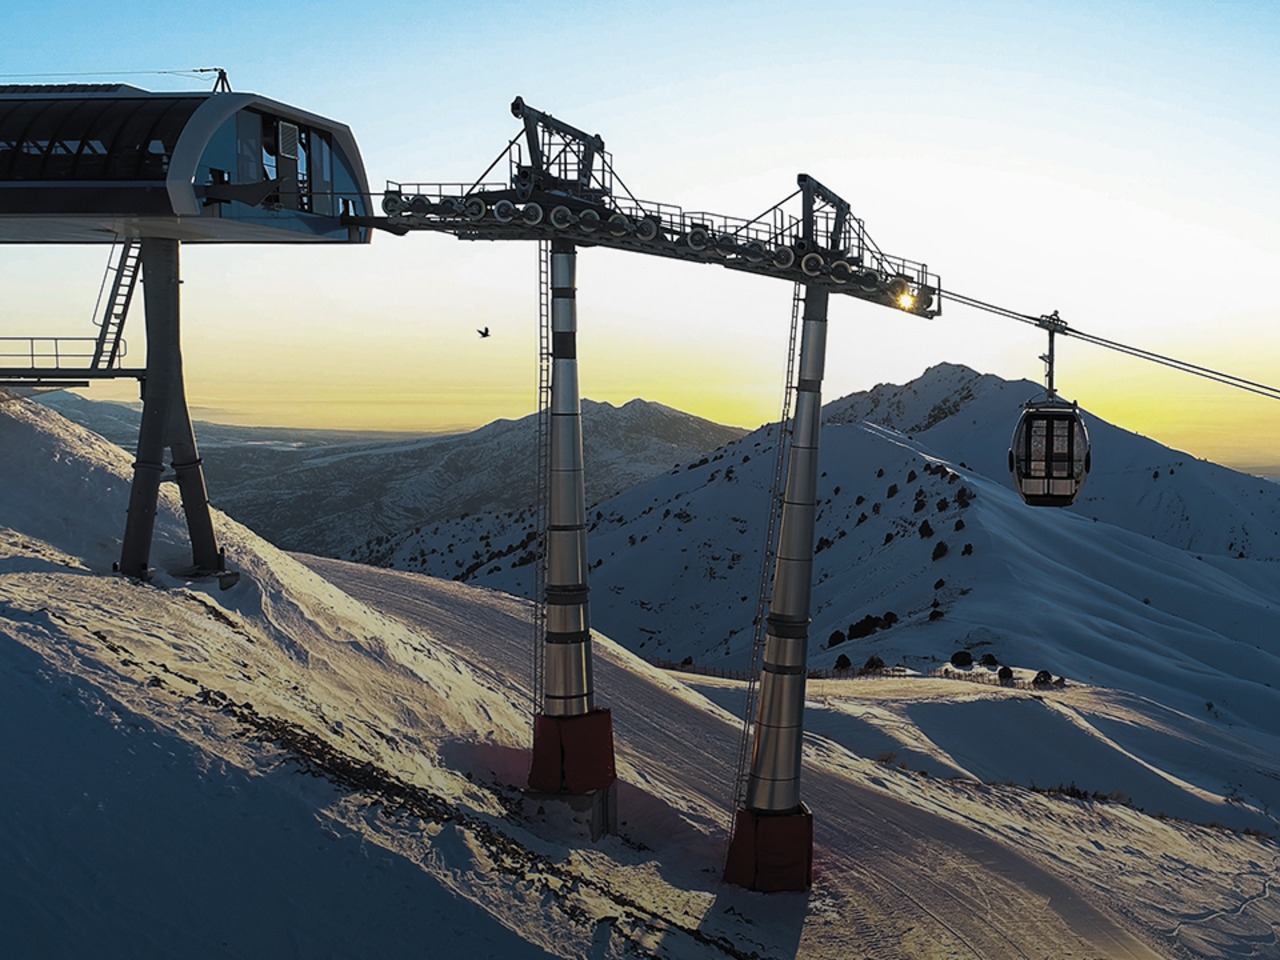 Курорт Амирсой: горы, снег, великолепие! | Цена 190€, отзывы, описание экскурсии